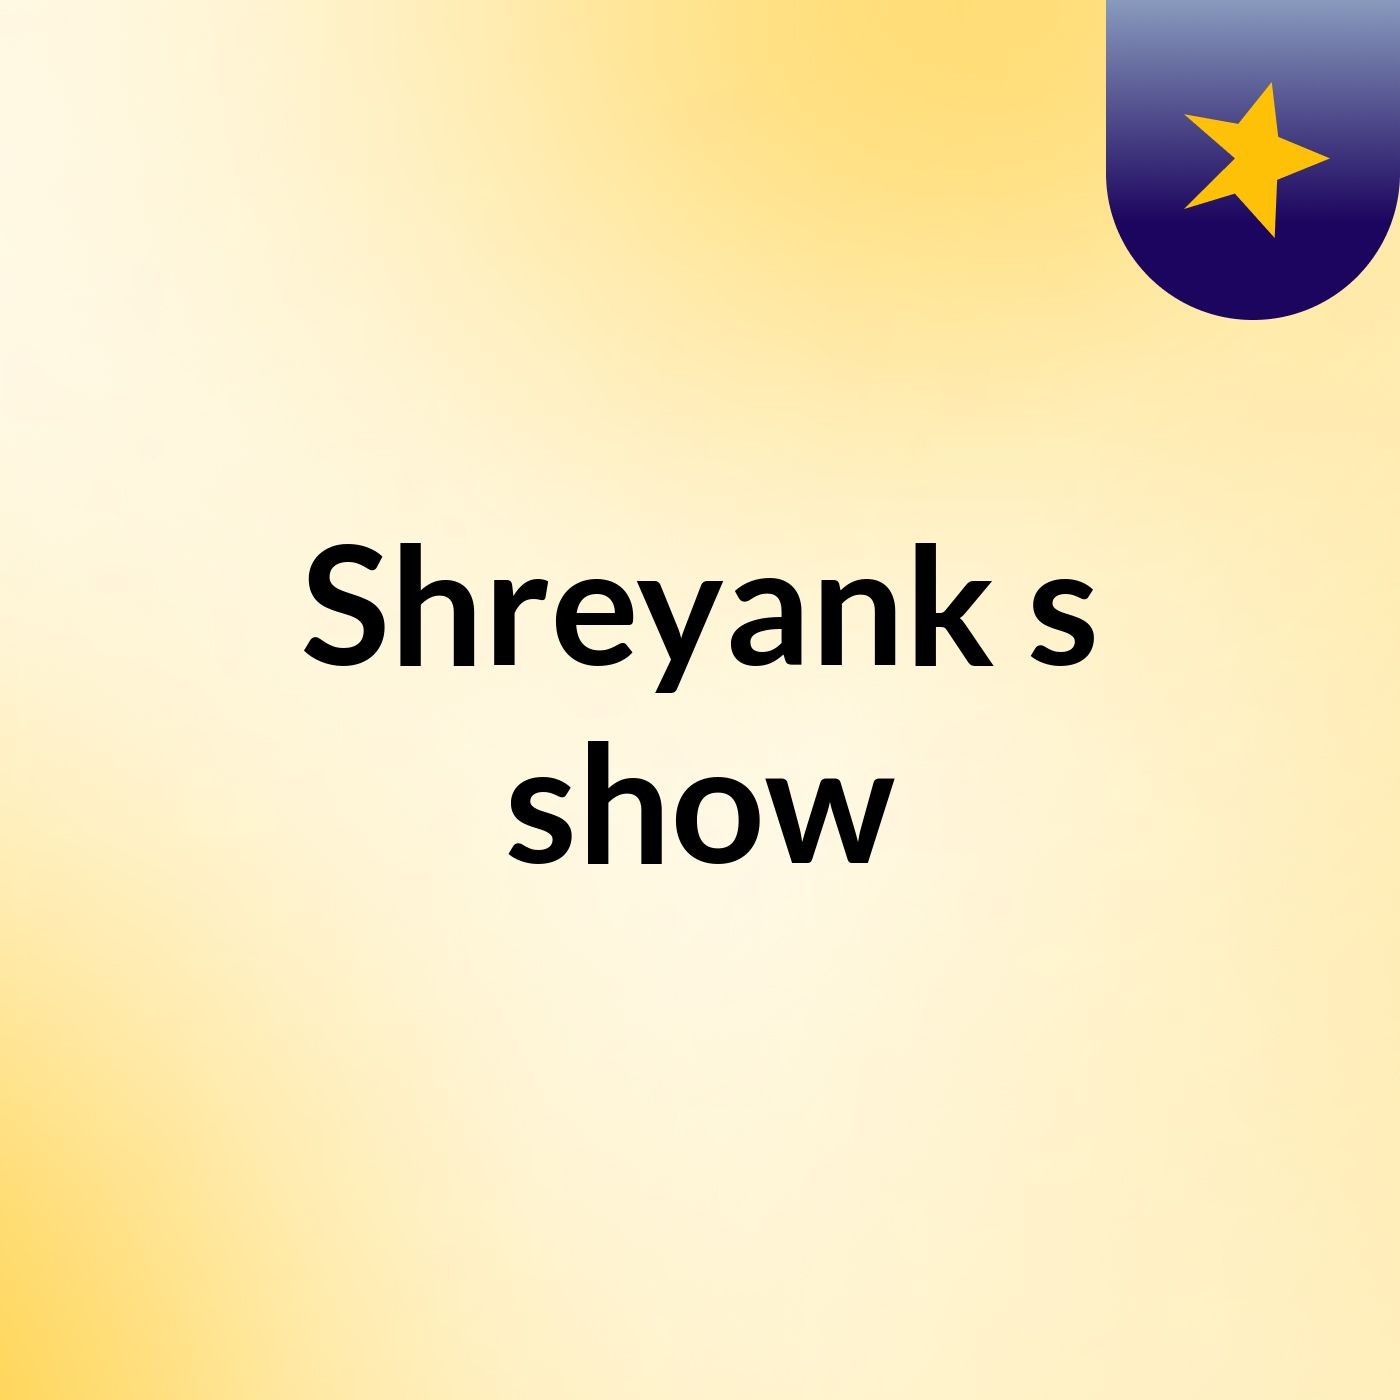 Shreyank's show